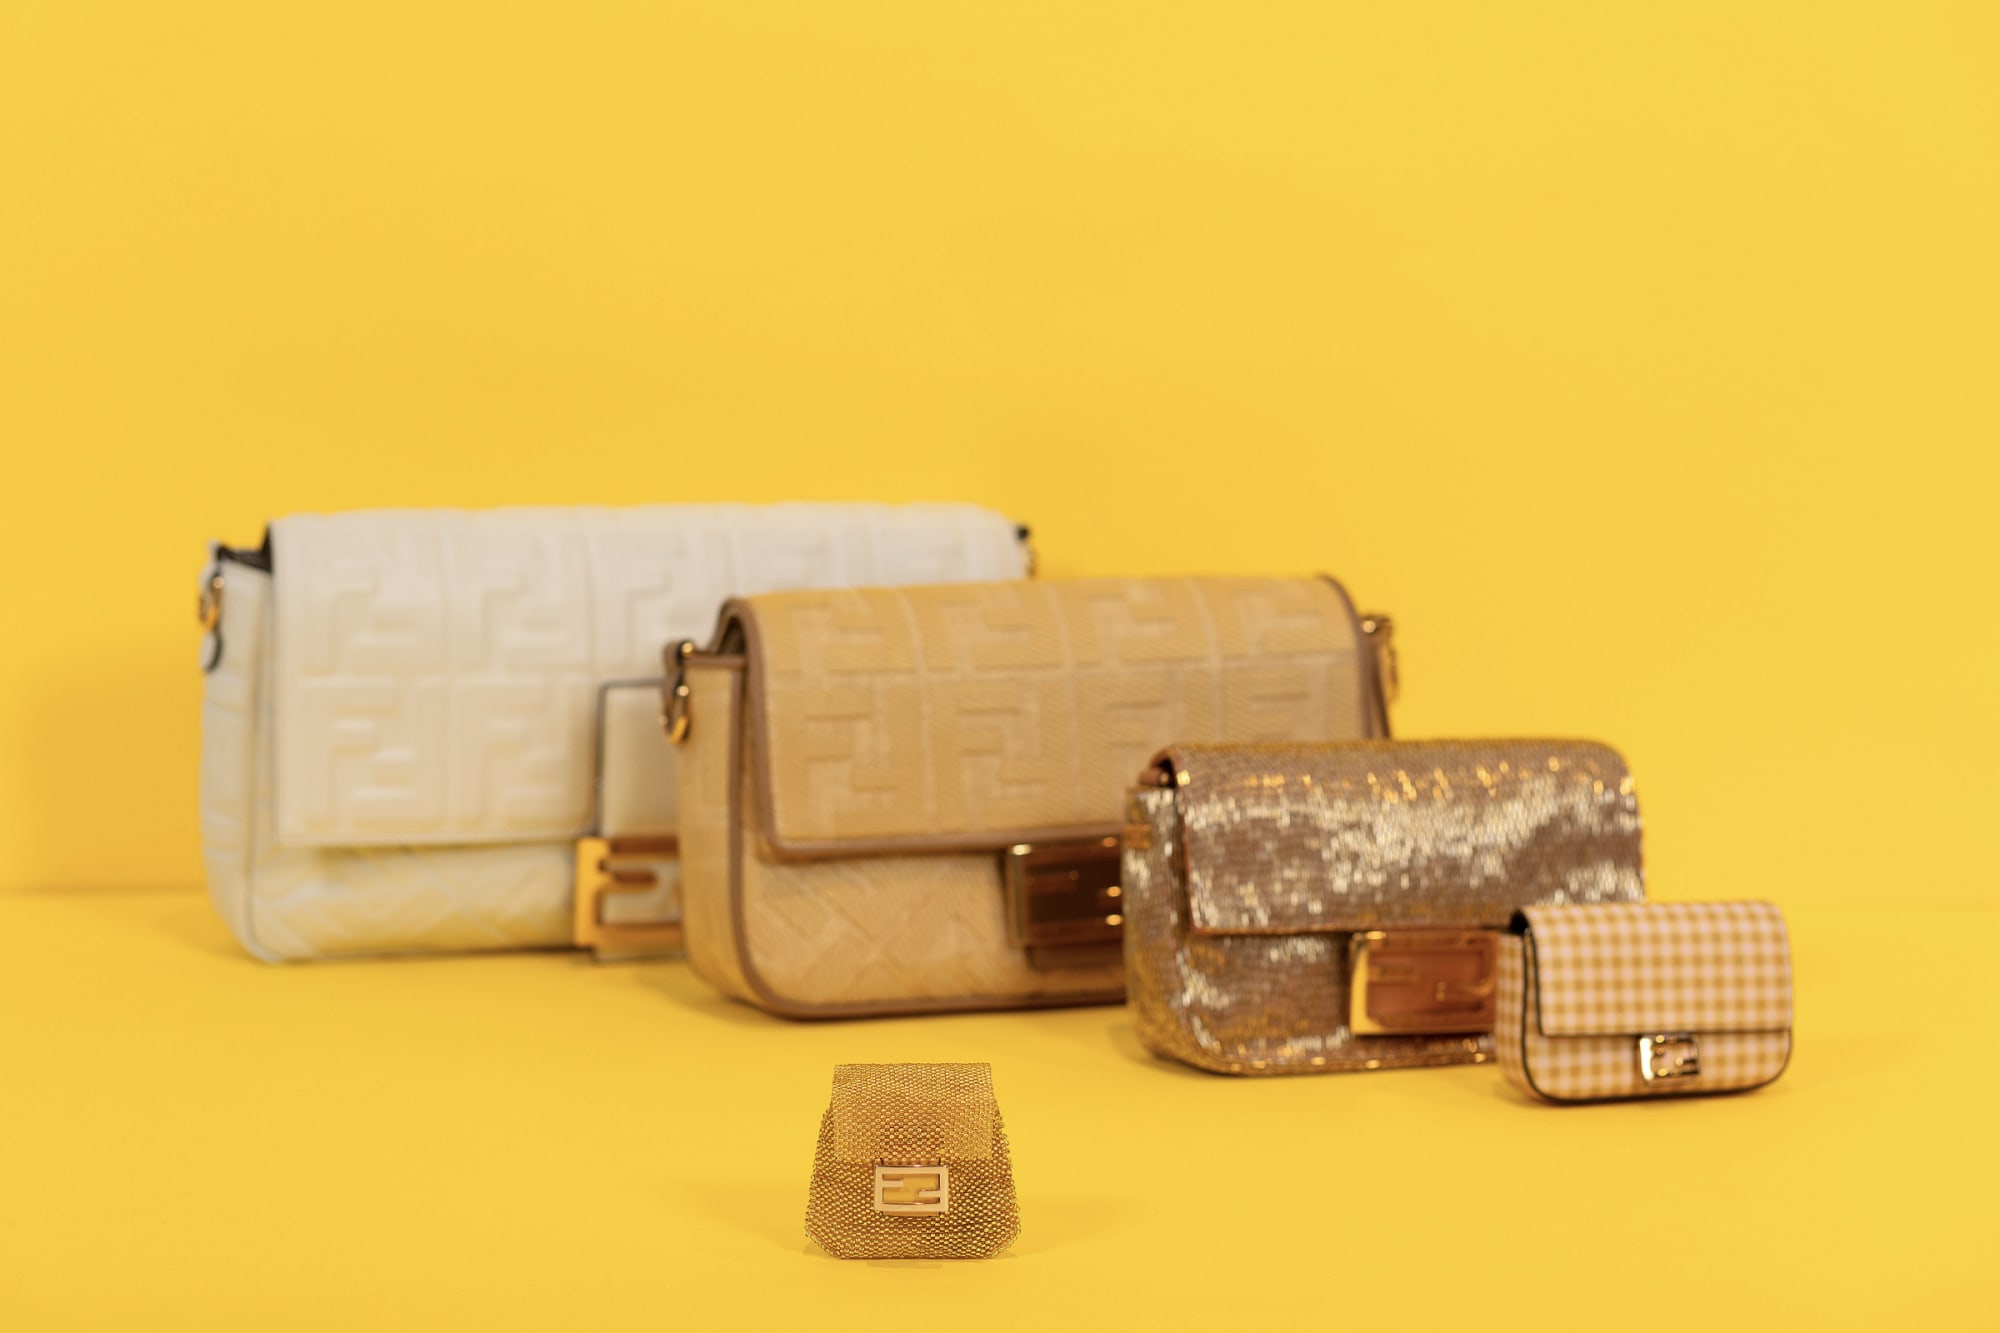 フェンディ史上最小のバッグ「ピコ バゲット」が登場 4cm×4cmのAirPods 